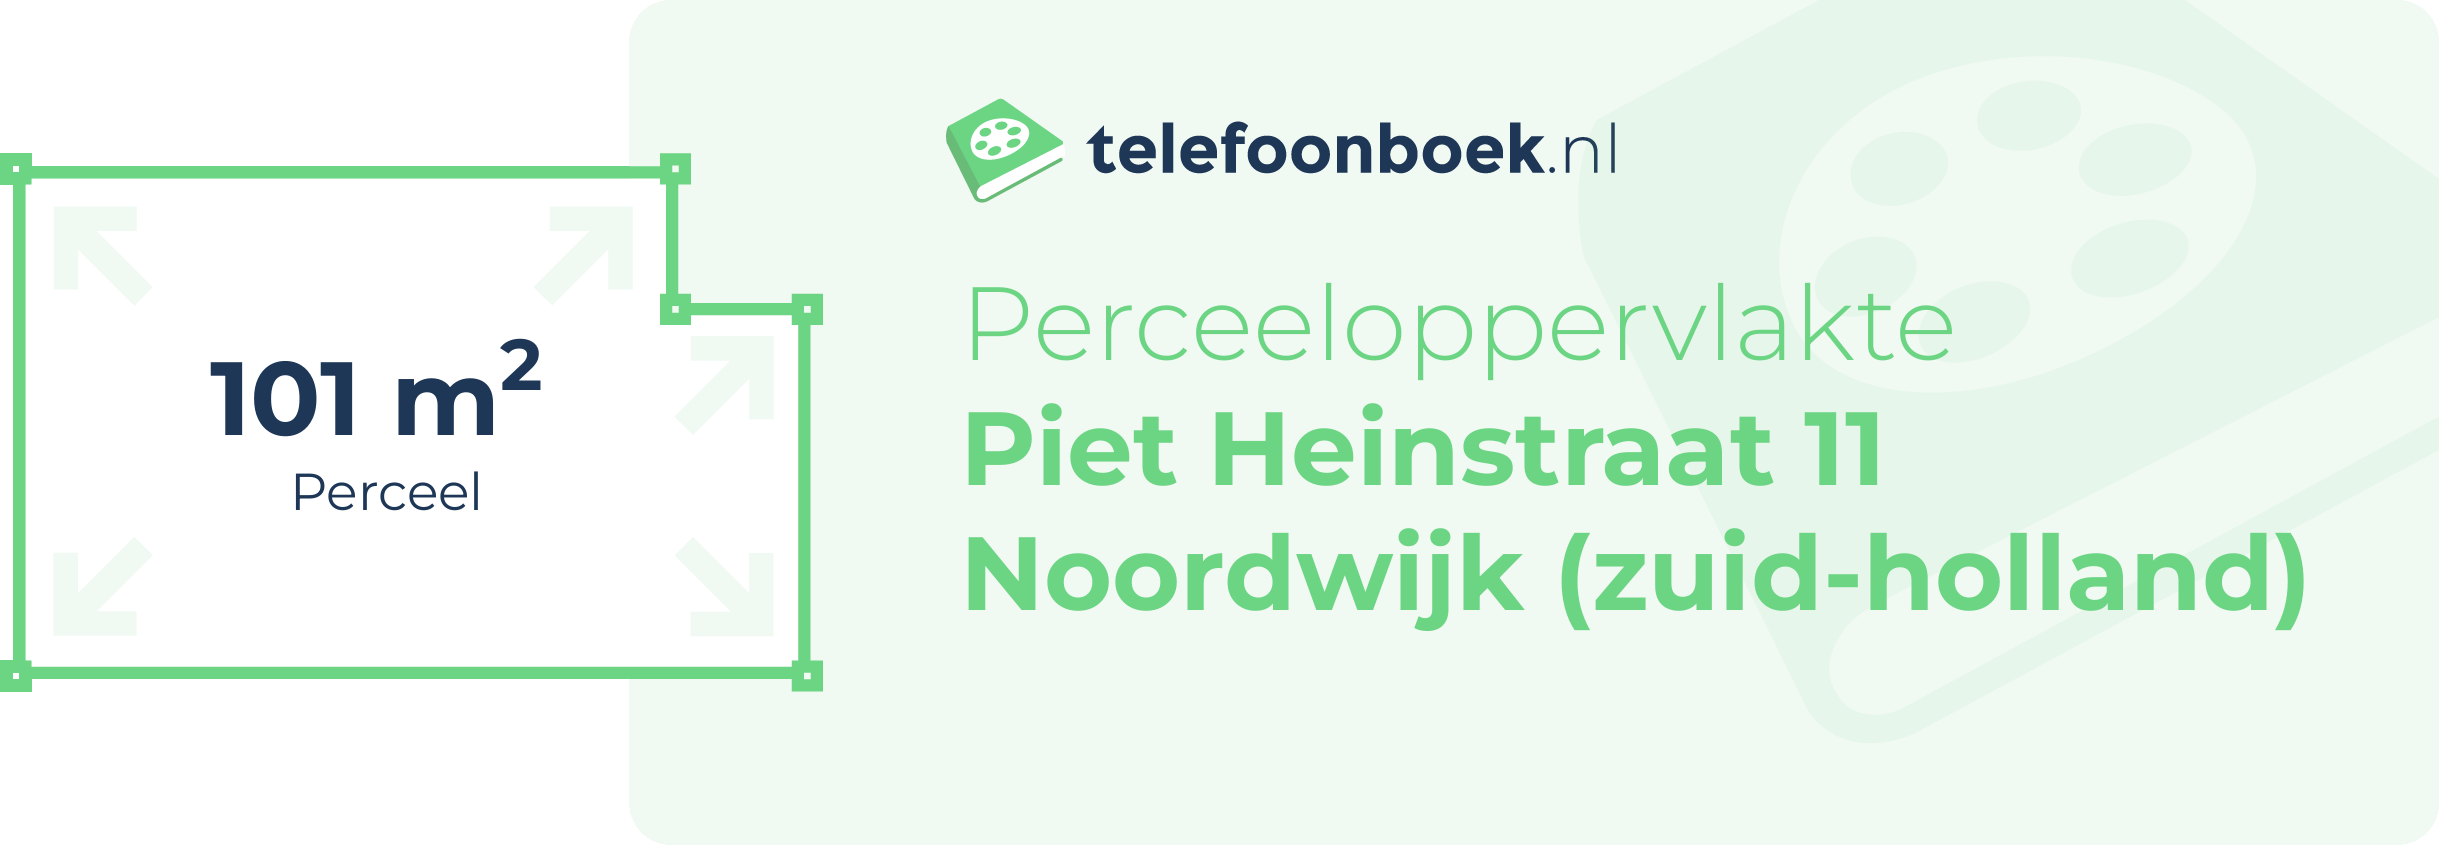 Perceeloppervlakte Piet Heinstraat 11 Noordwijk (Zuid-Holland)